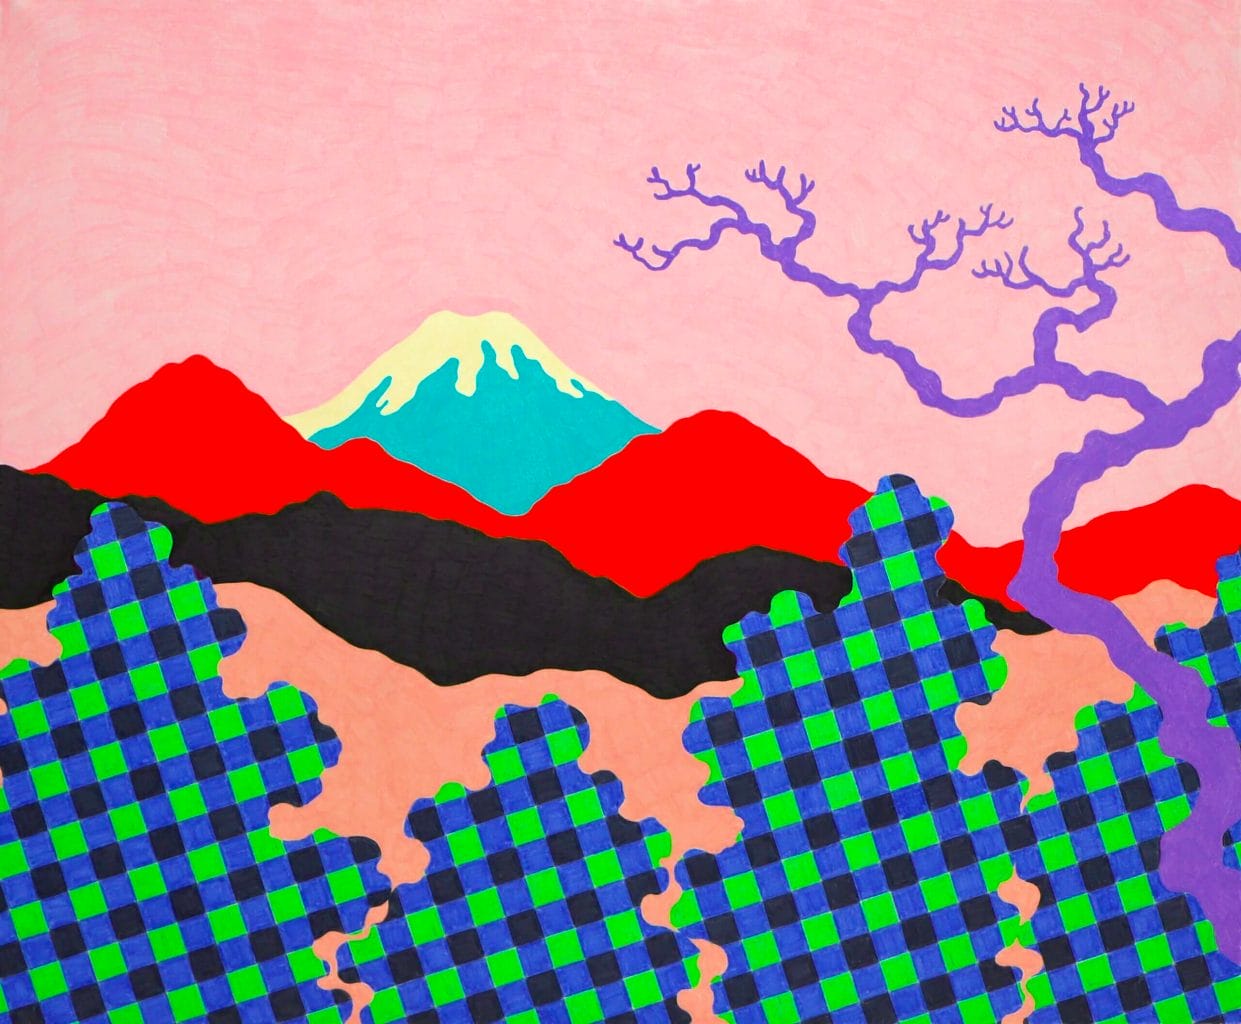 色鉛筆を用いた細かい筆致と色彩が特徴的な画家・村上生太郎の関西初個展「HELLO」、SkiiMa Galleryにて開催。